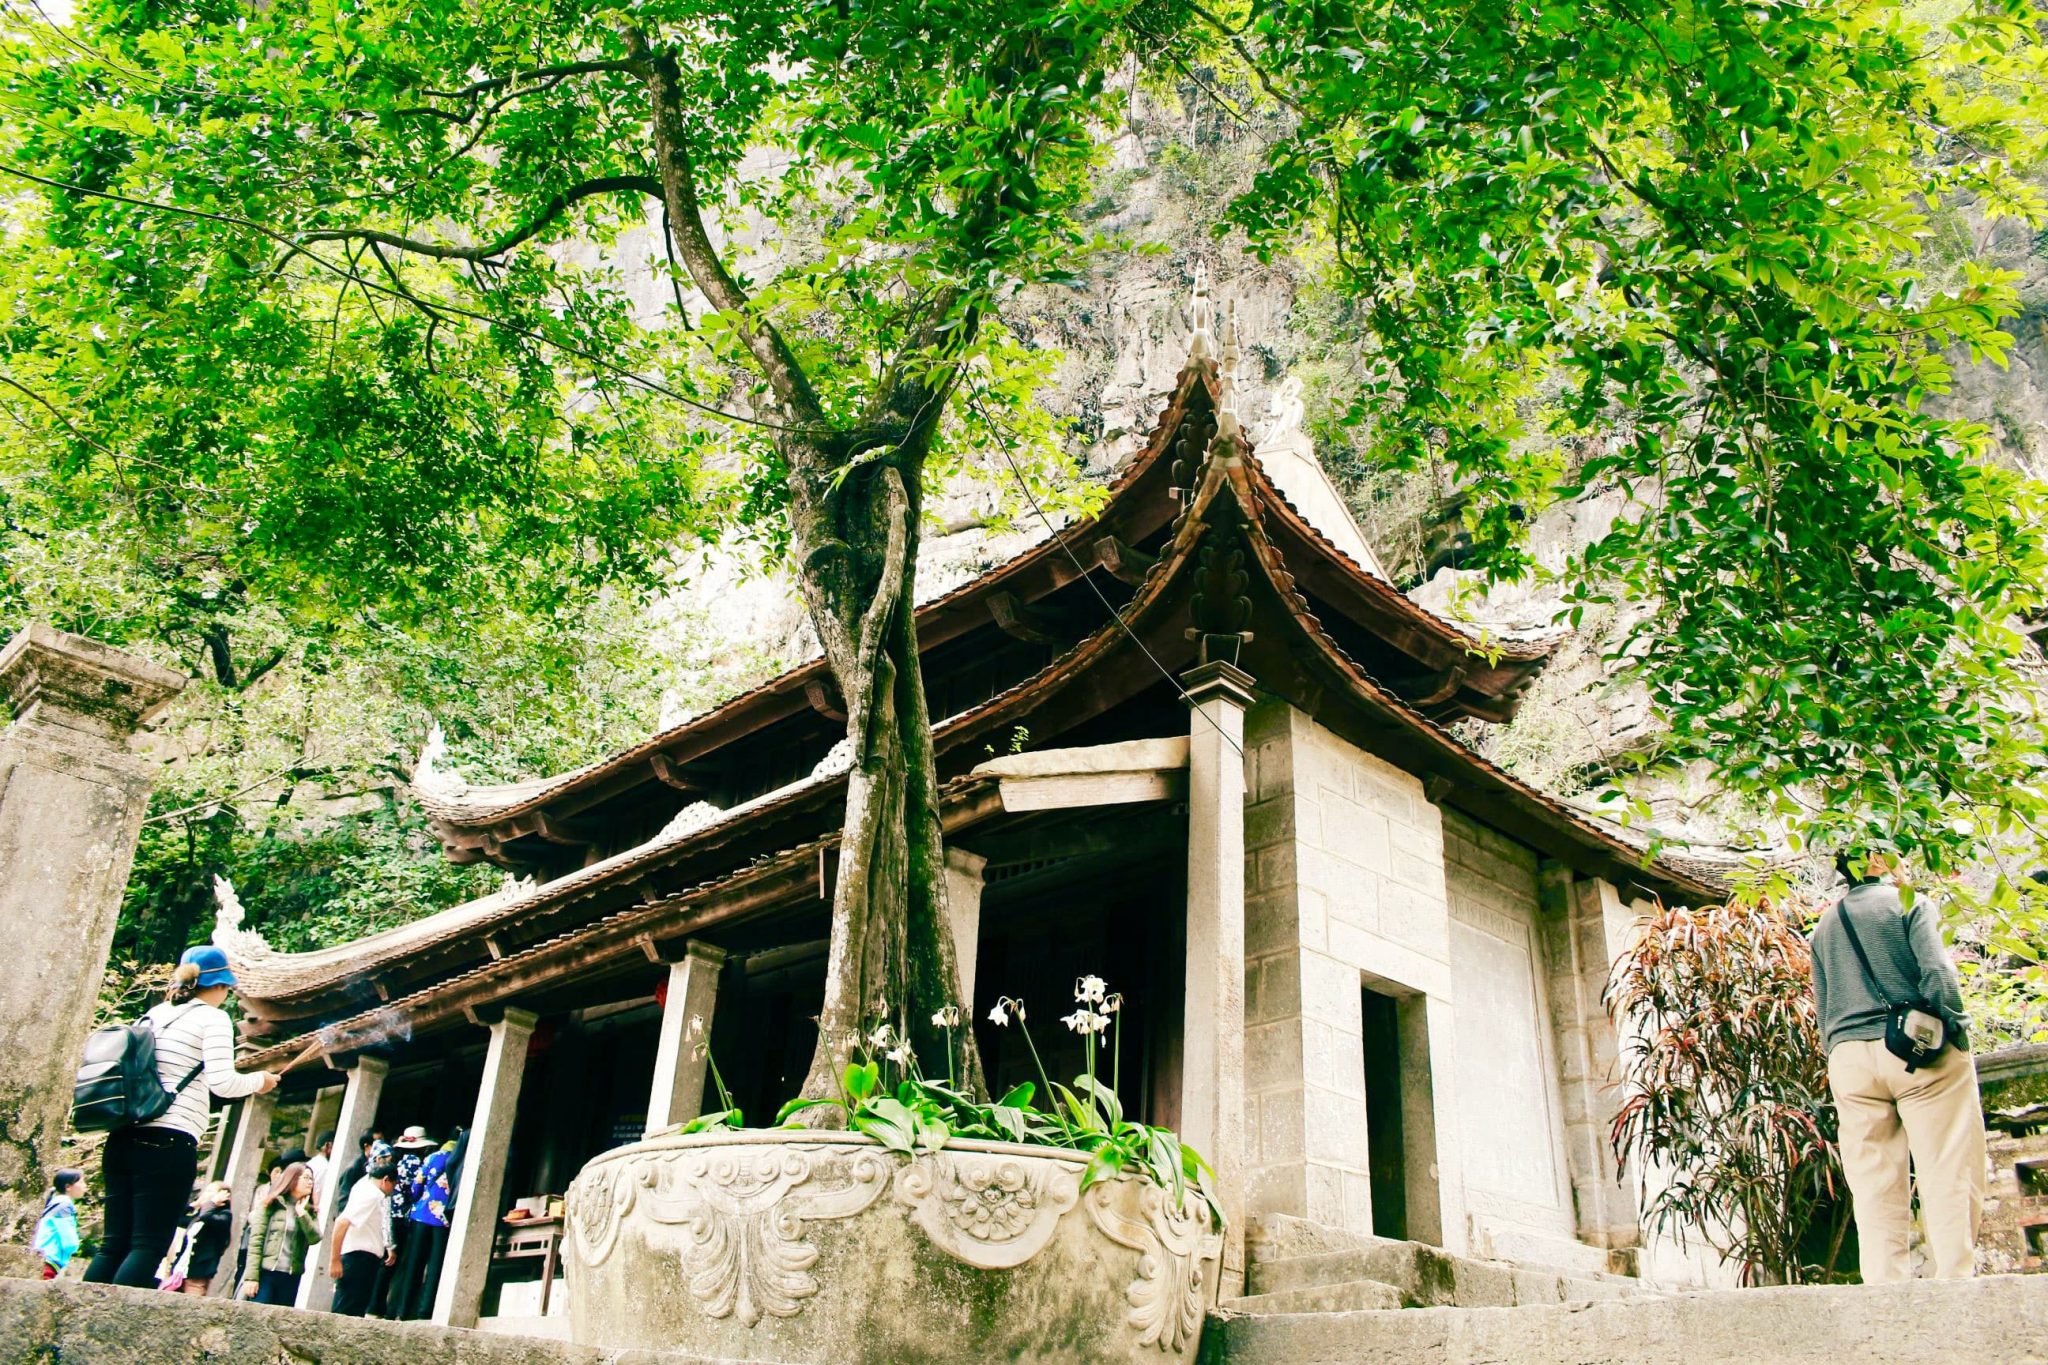 Hanoi to Ninh Binh to see Lower Pagoda